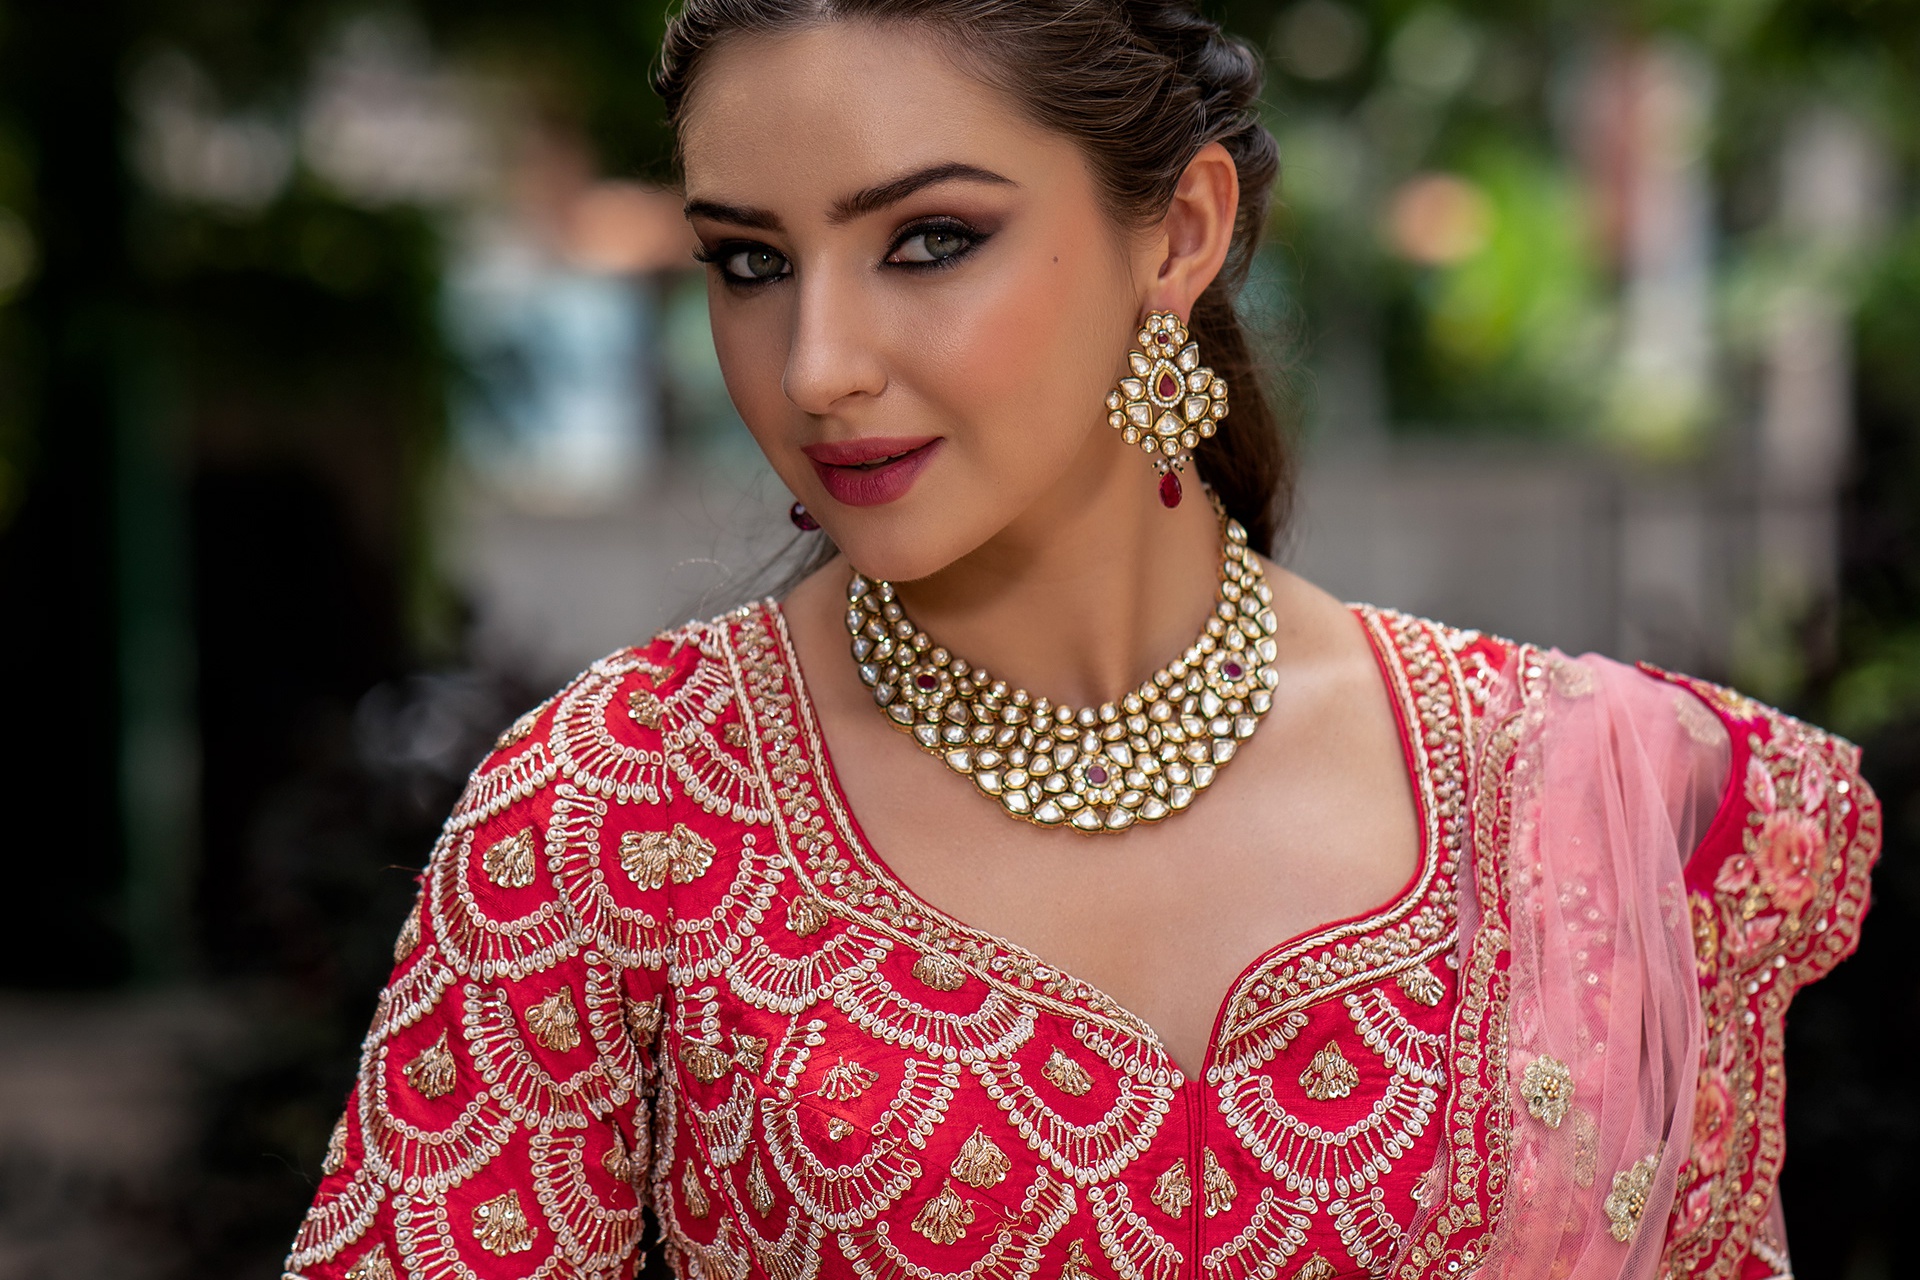 Free download wallpaper Jewelry, Model, Women, Earrings, Indian, Necklace, Lipstick on your PC desktop